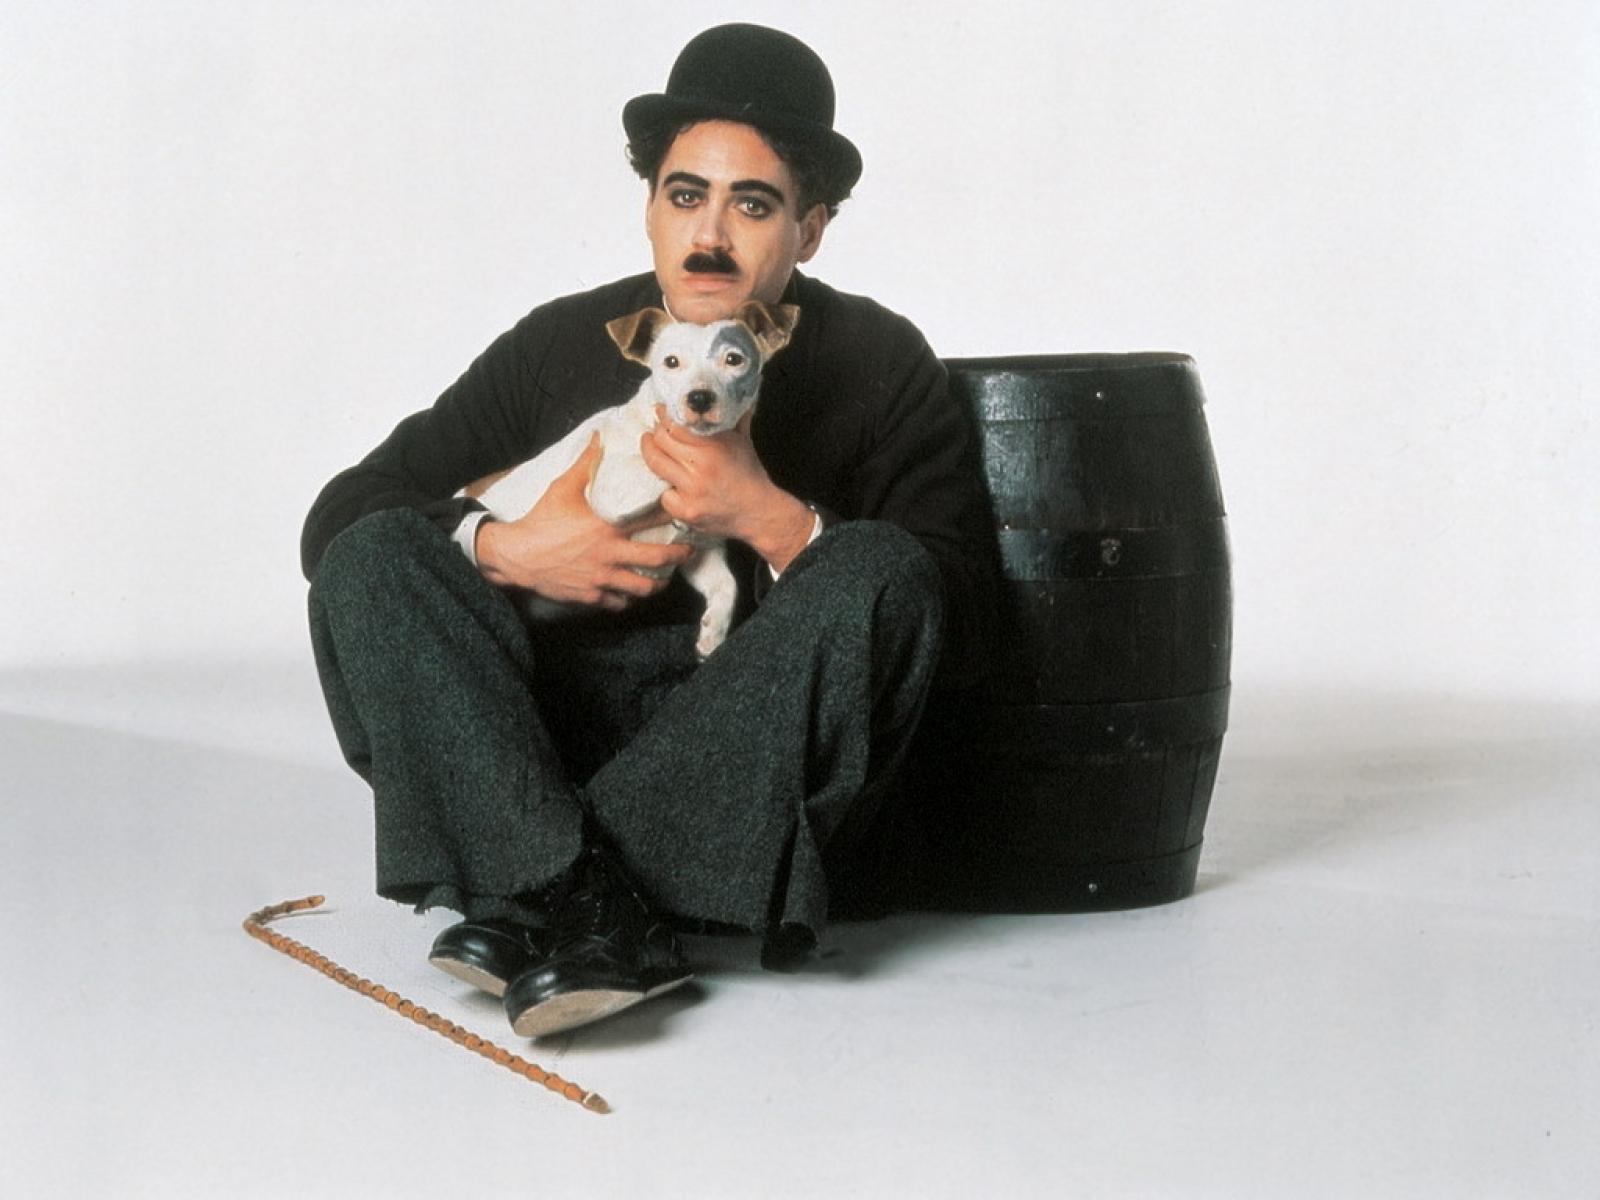 Robert Downey Jr. as Charlie Chaplin